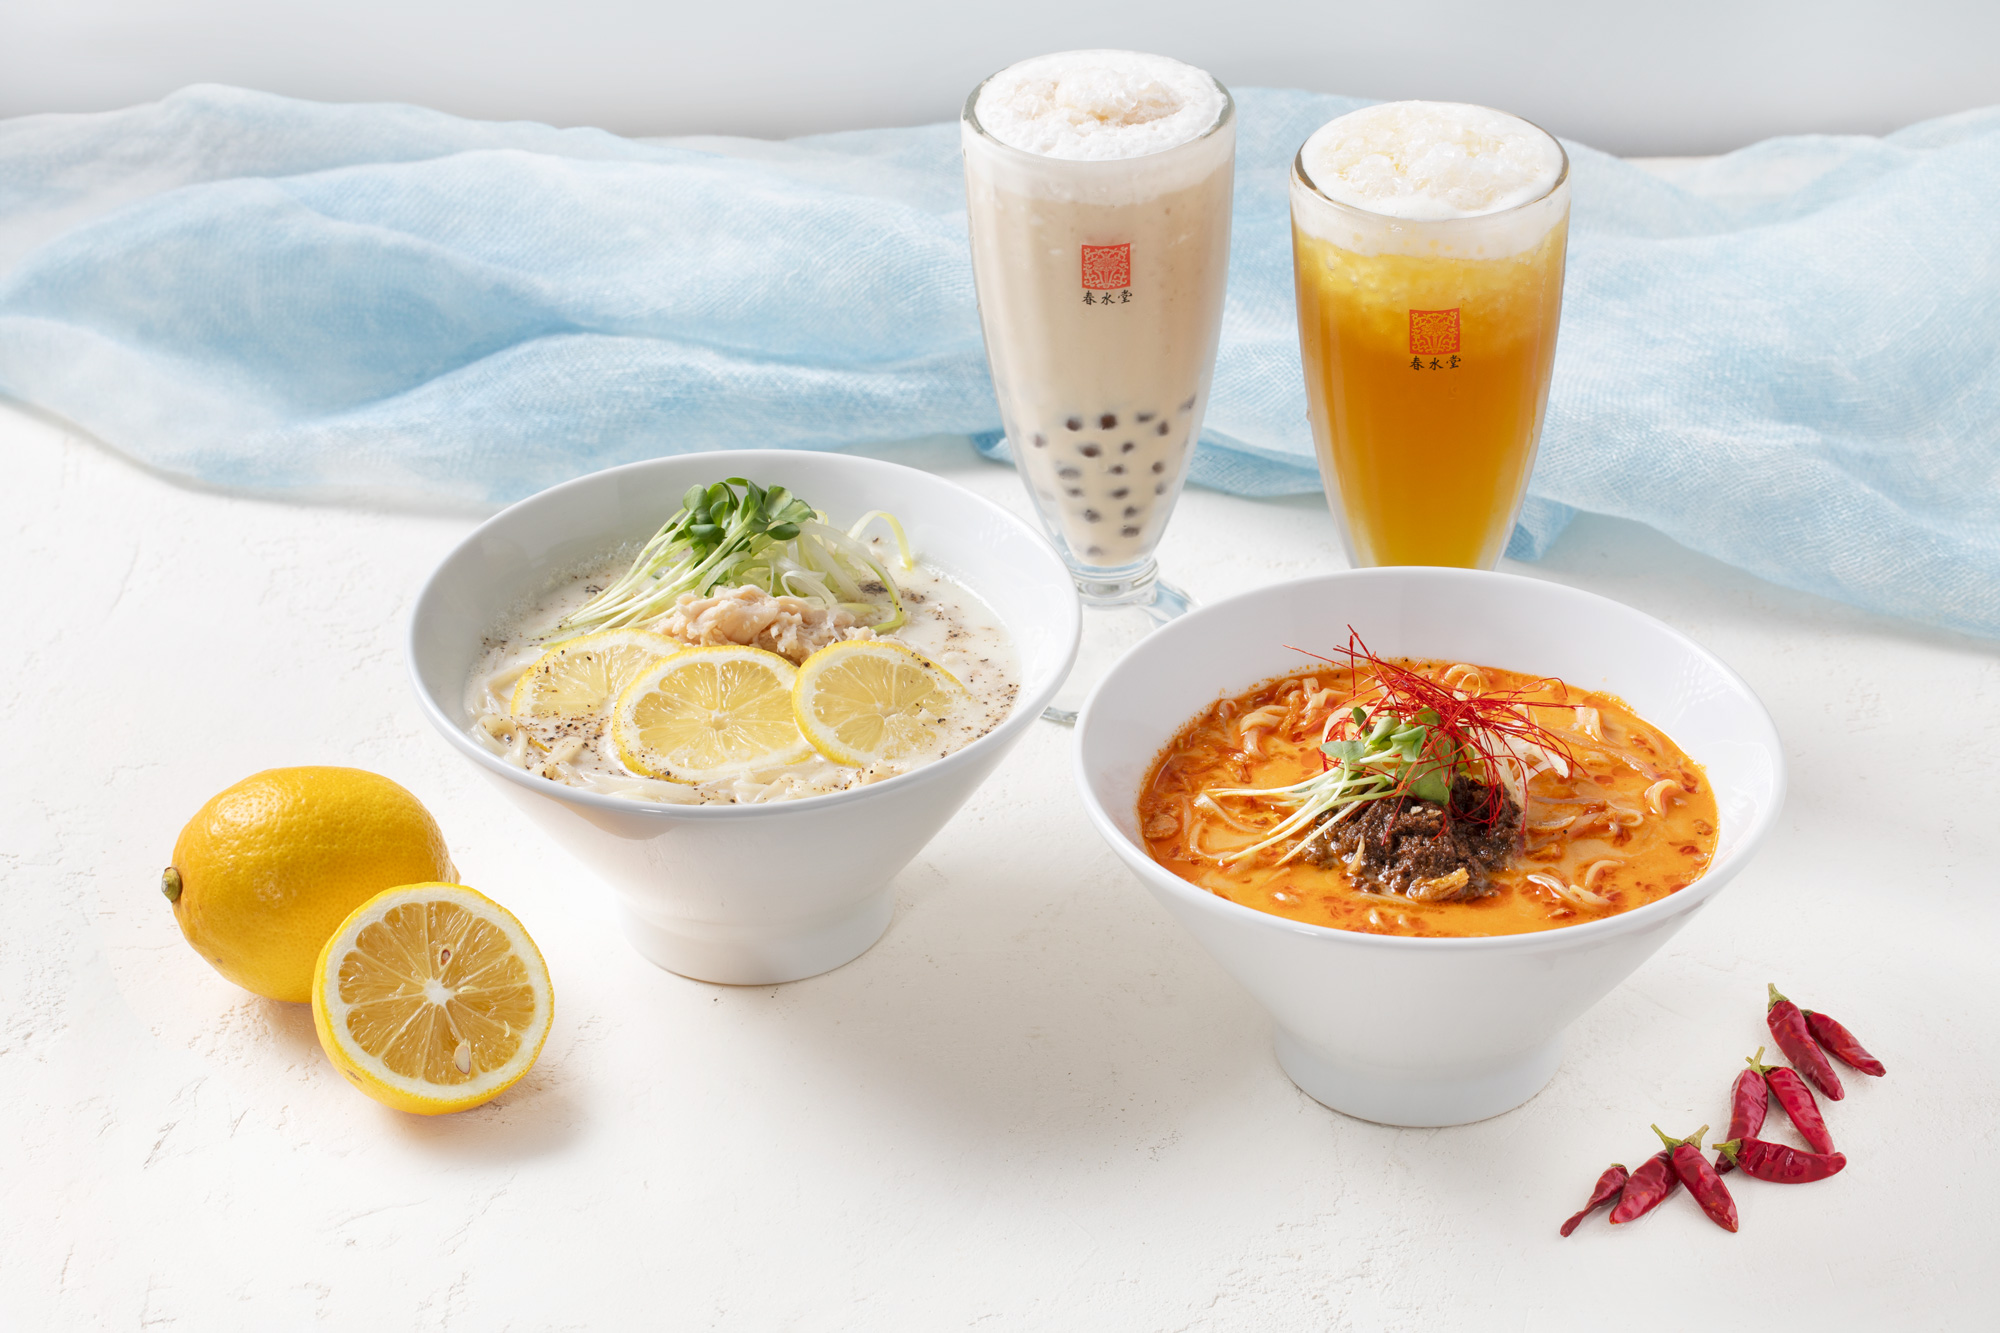 『”激辛”担々豆乳スープ涼麺』(右)『レモン豆乳スープ涼麺』(左)